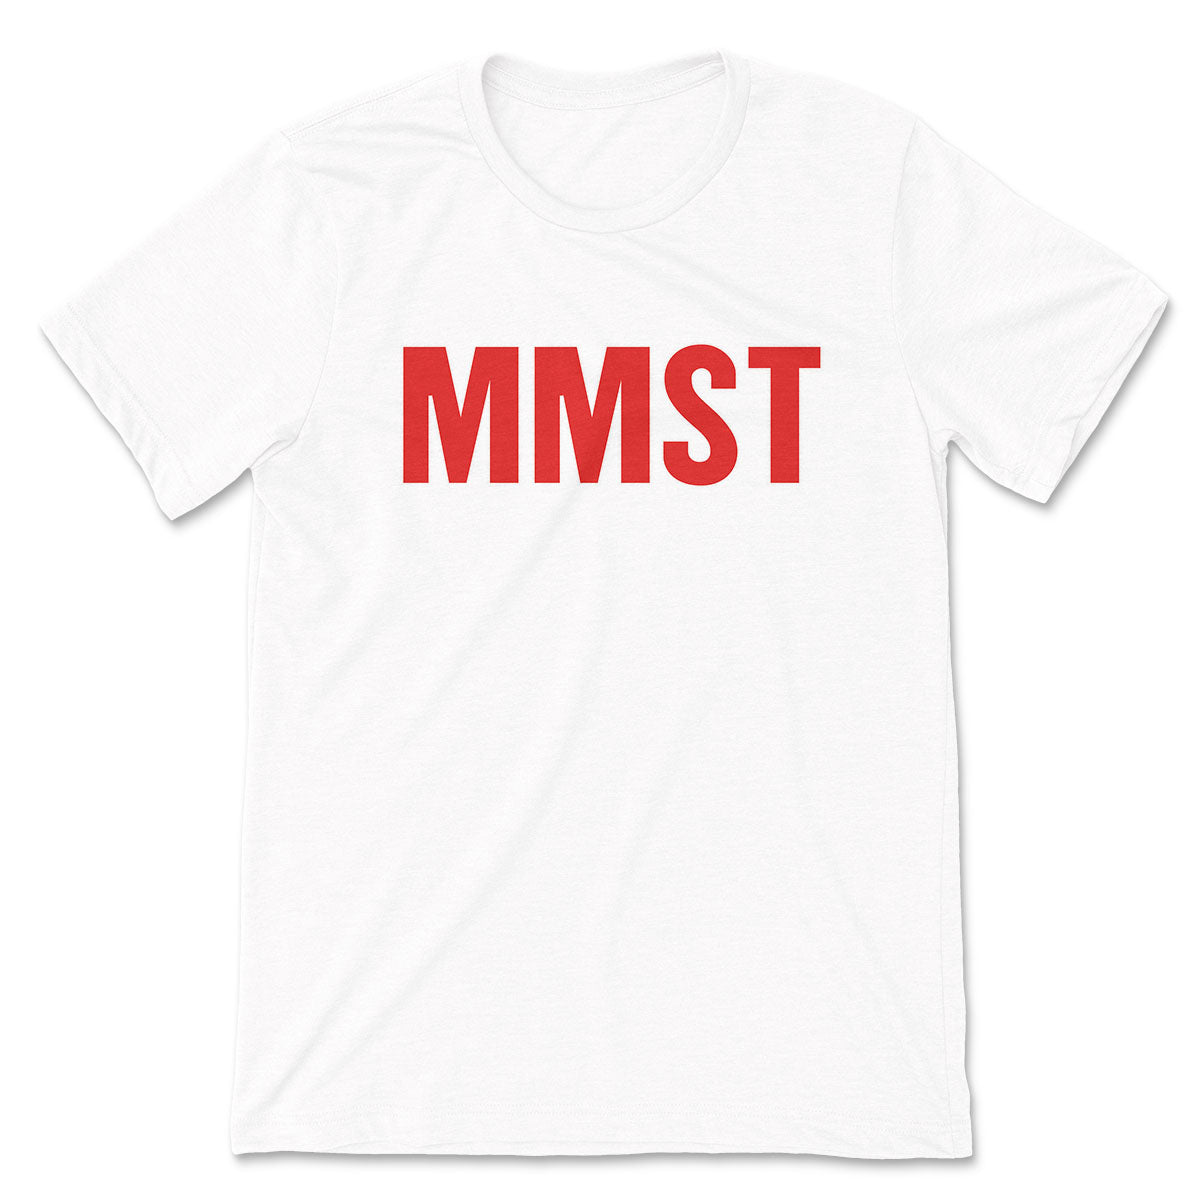 MMST // Men's Tee